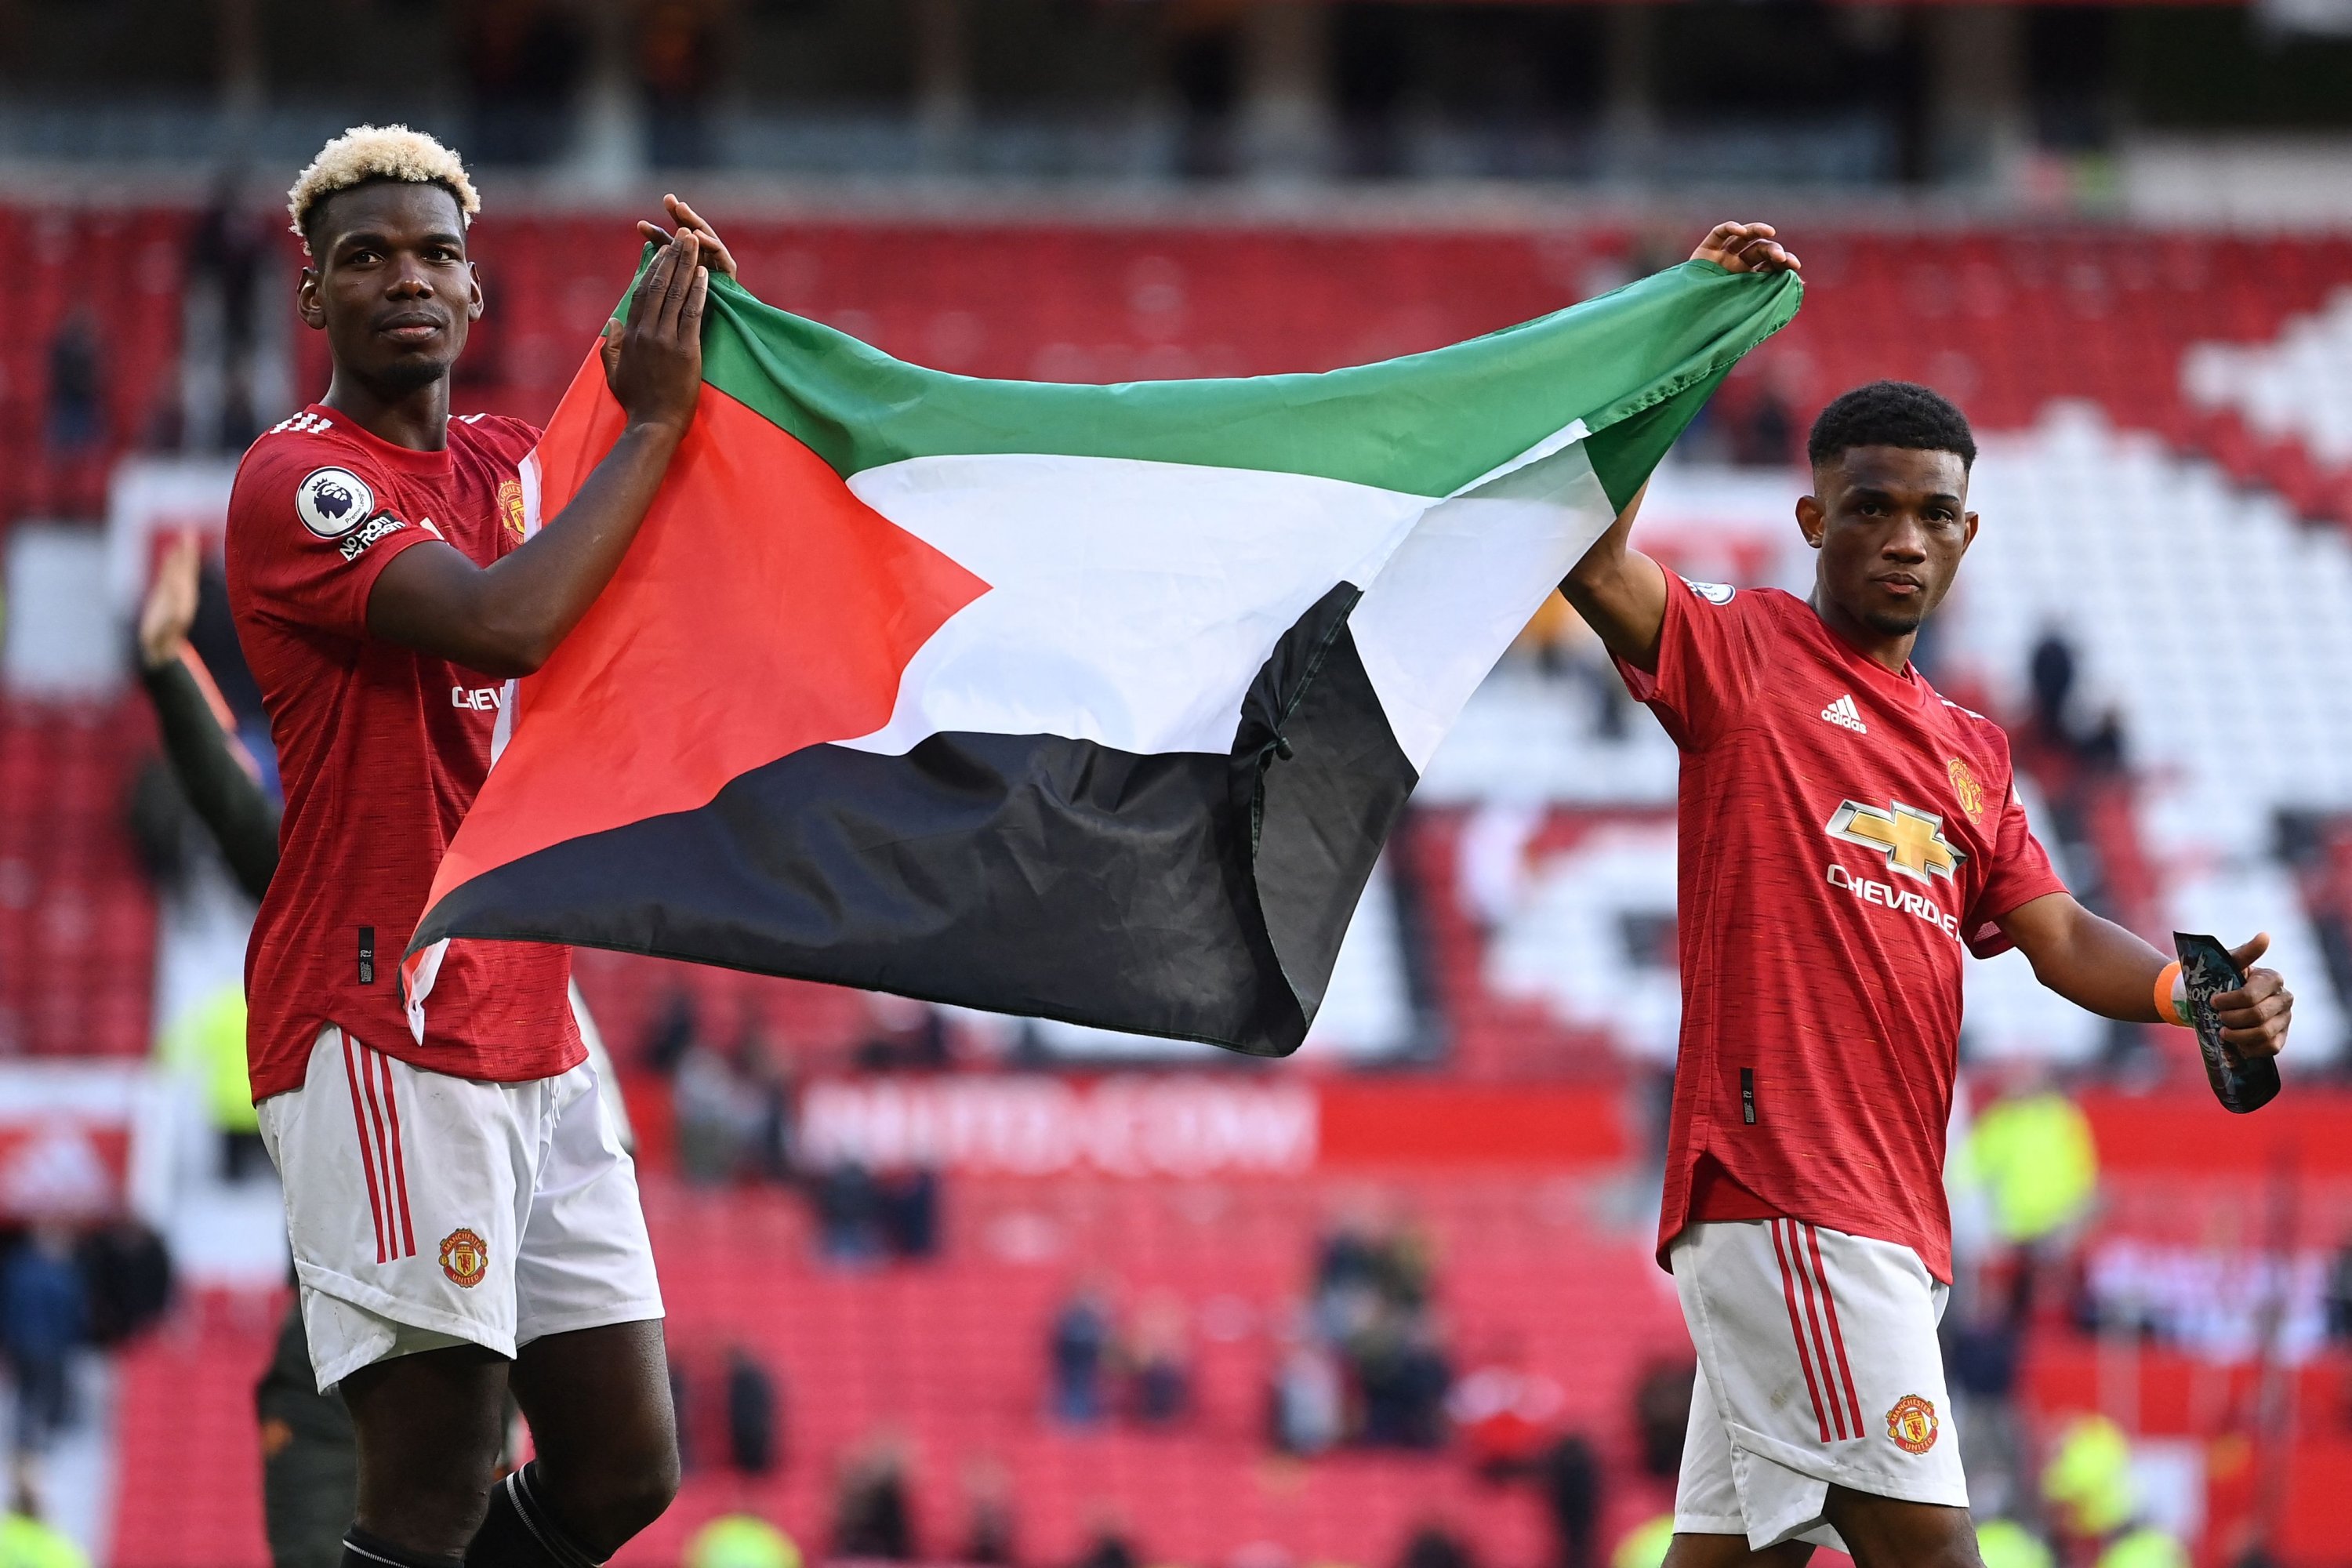 Pemain Manchester United Paul Pogba (kiri) dan Walikota Diallo memegang bendera Palestina saat mereka berjalan di sekitar lapangan pada akhir pertandingan Liga Premier melawan Fulham, Manchester, Inggris, 18 Mei 2021 (AFP Photo)